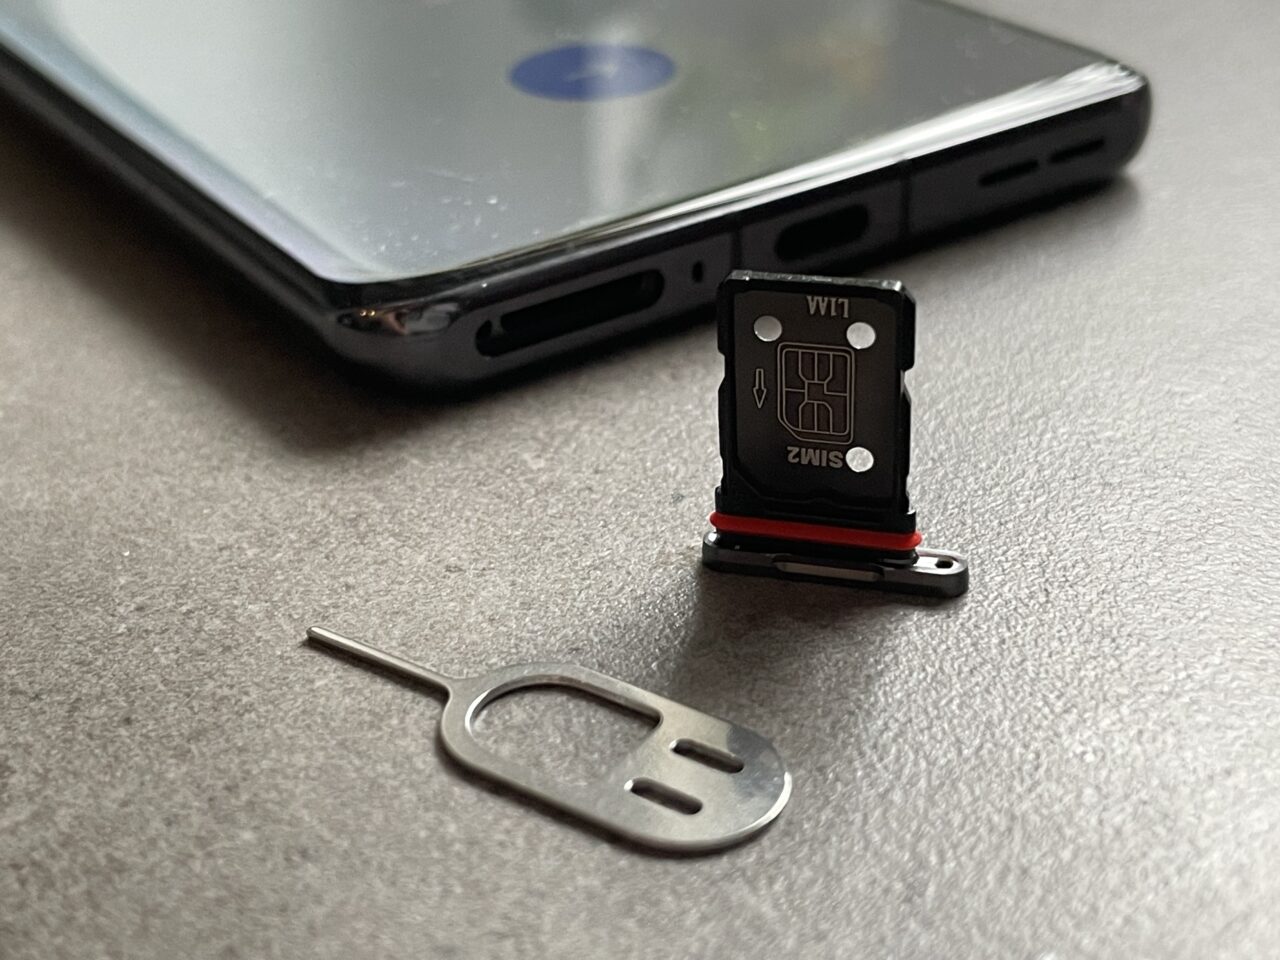 Taca z otwartym gniazdem na karty SIM i microSD obok leżącego narzędzia do wyjmowania tacki z telefonu, na tle ciemnej powierzchni.